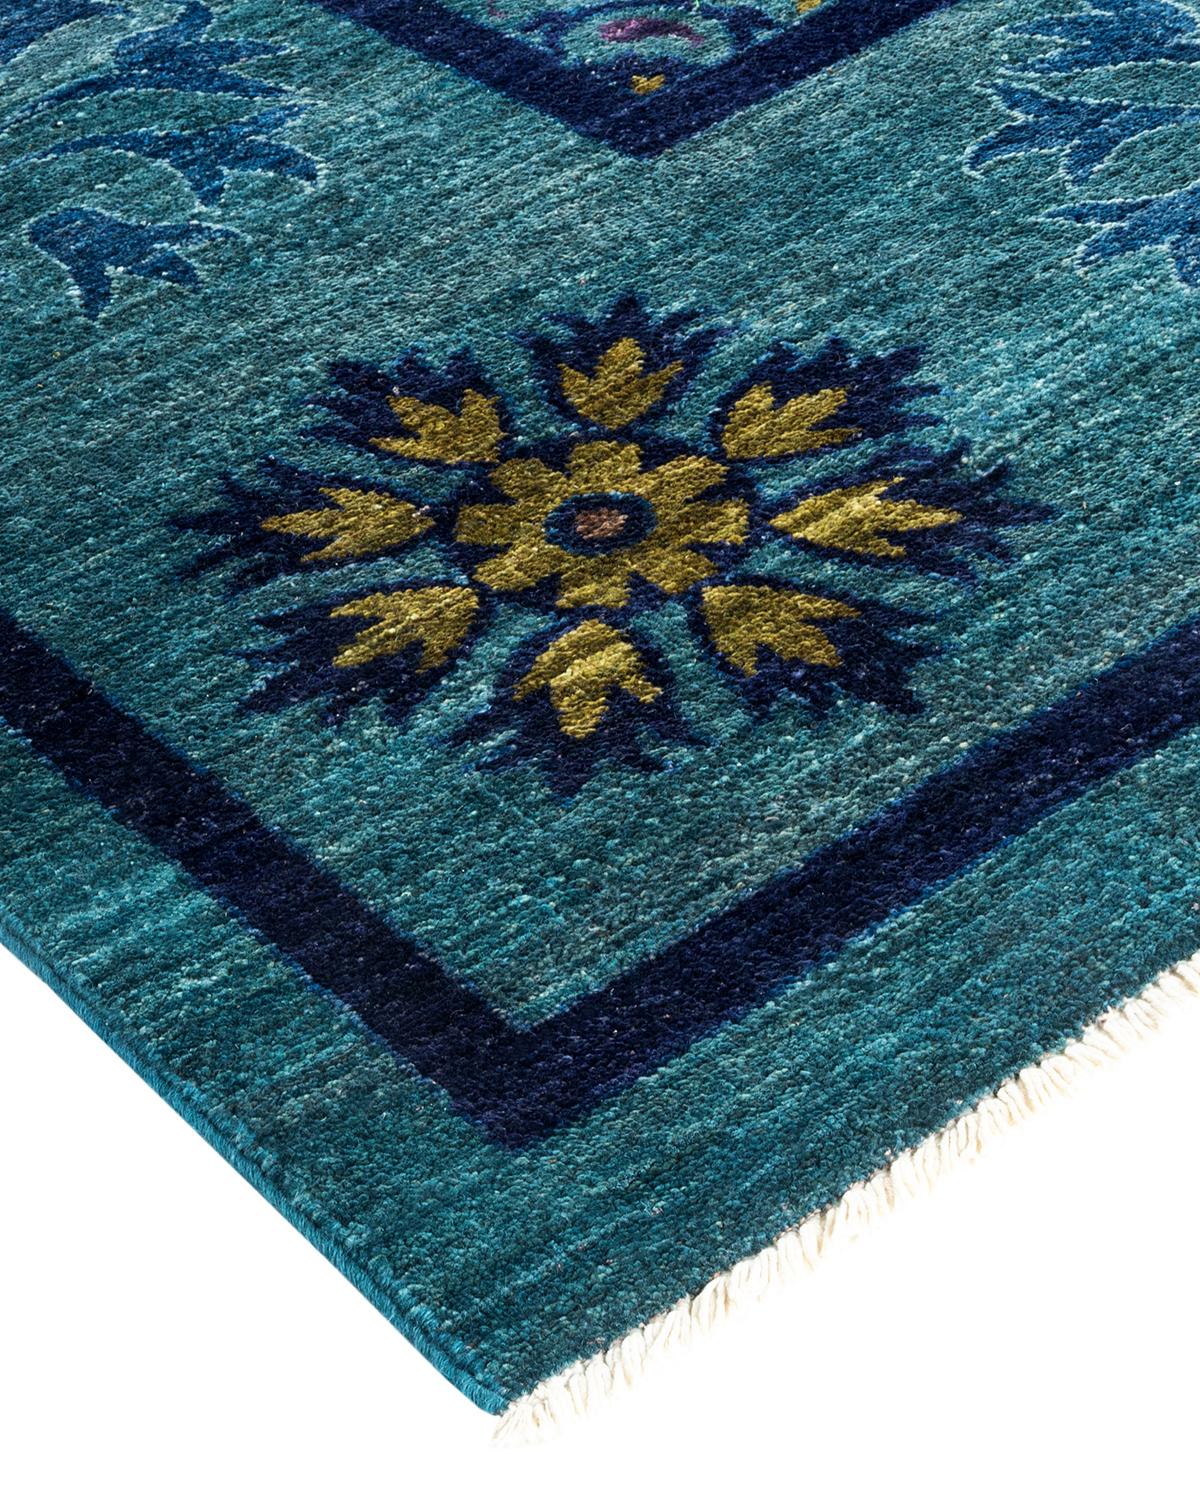 Die akribische Kunst der handgestickten Textilien usbekischer Stämme inspirierte die Suzani Collection'S. Kräftige Motive, vor allem Granatäpfel, Sonne und Mond, sind häufige Elemente, deren einfache, aber überzeugende Designs in Wolle und Seide